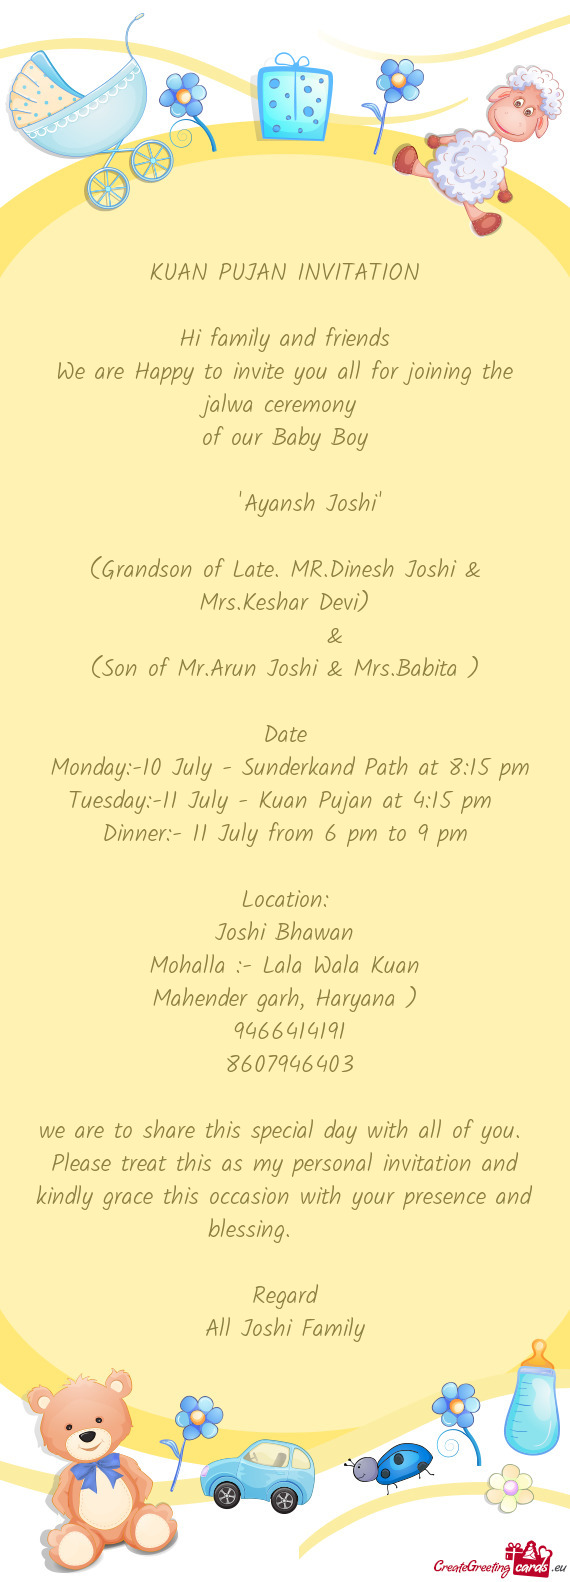 Monday:-10 July - Sunderkand Path at 8:15 pm